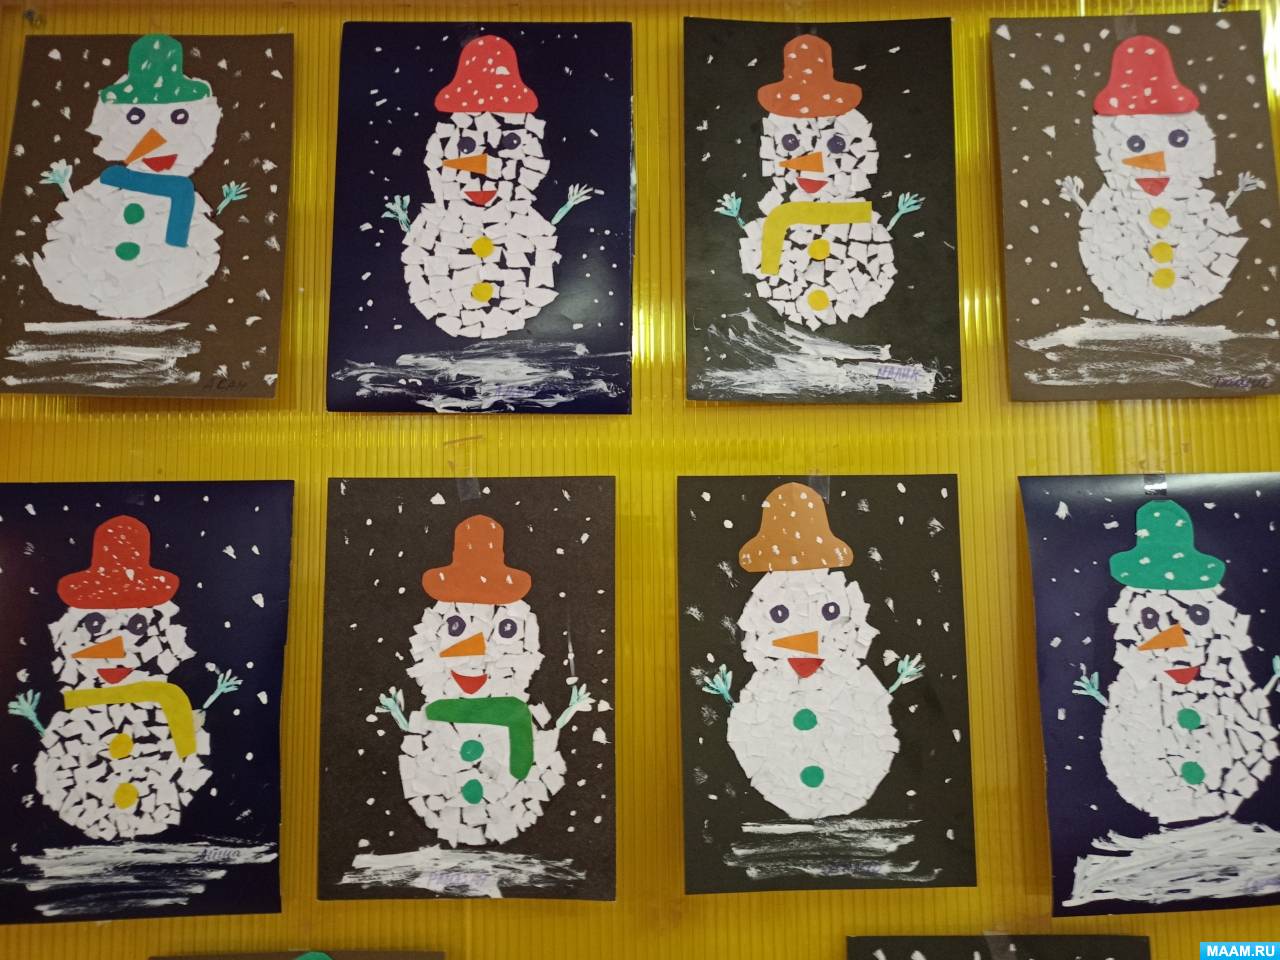 Снеговик своими руками: 100+ поделок для детей и взрослых